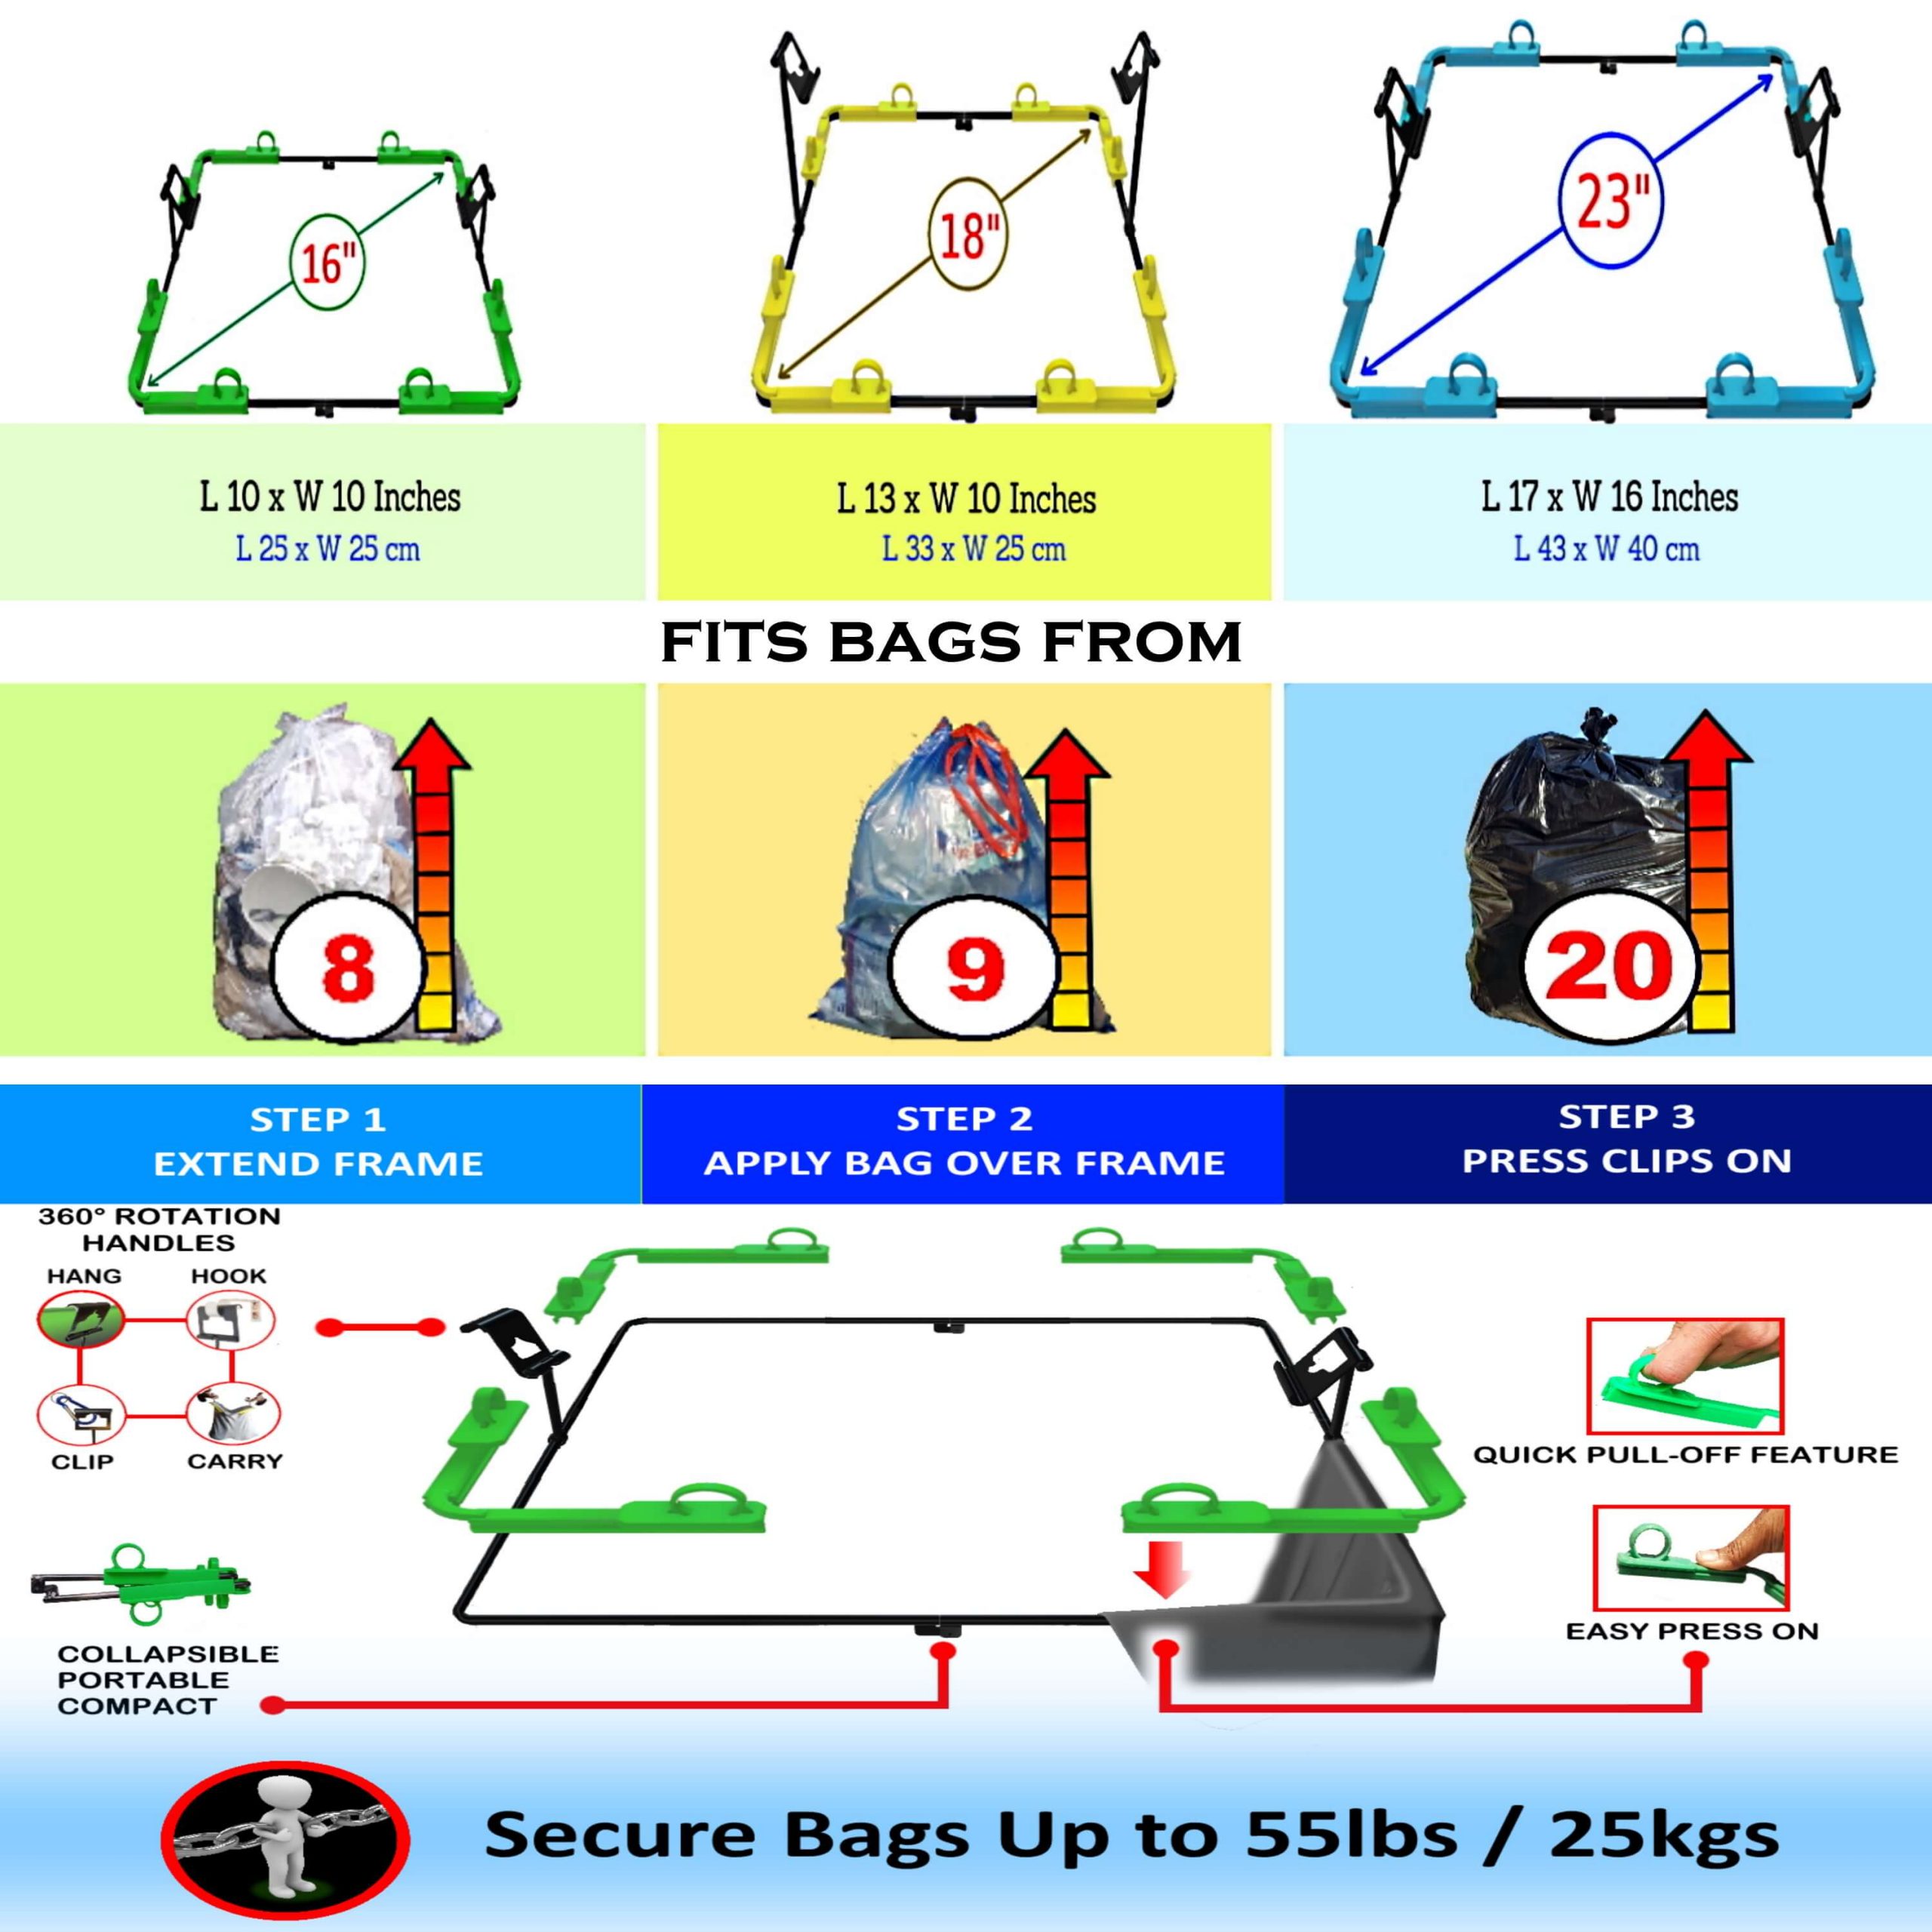 BagEZ trash bag holders size guide & use sheet